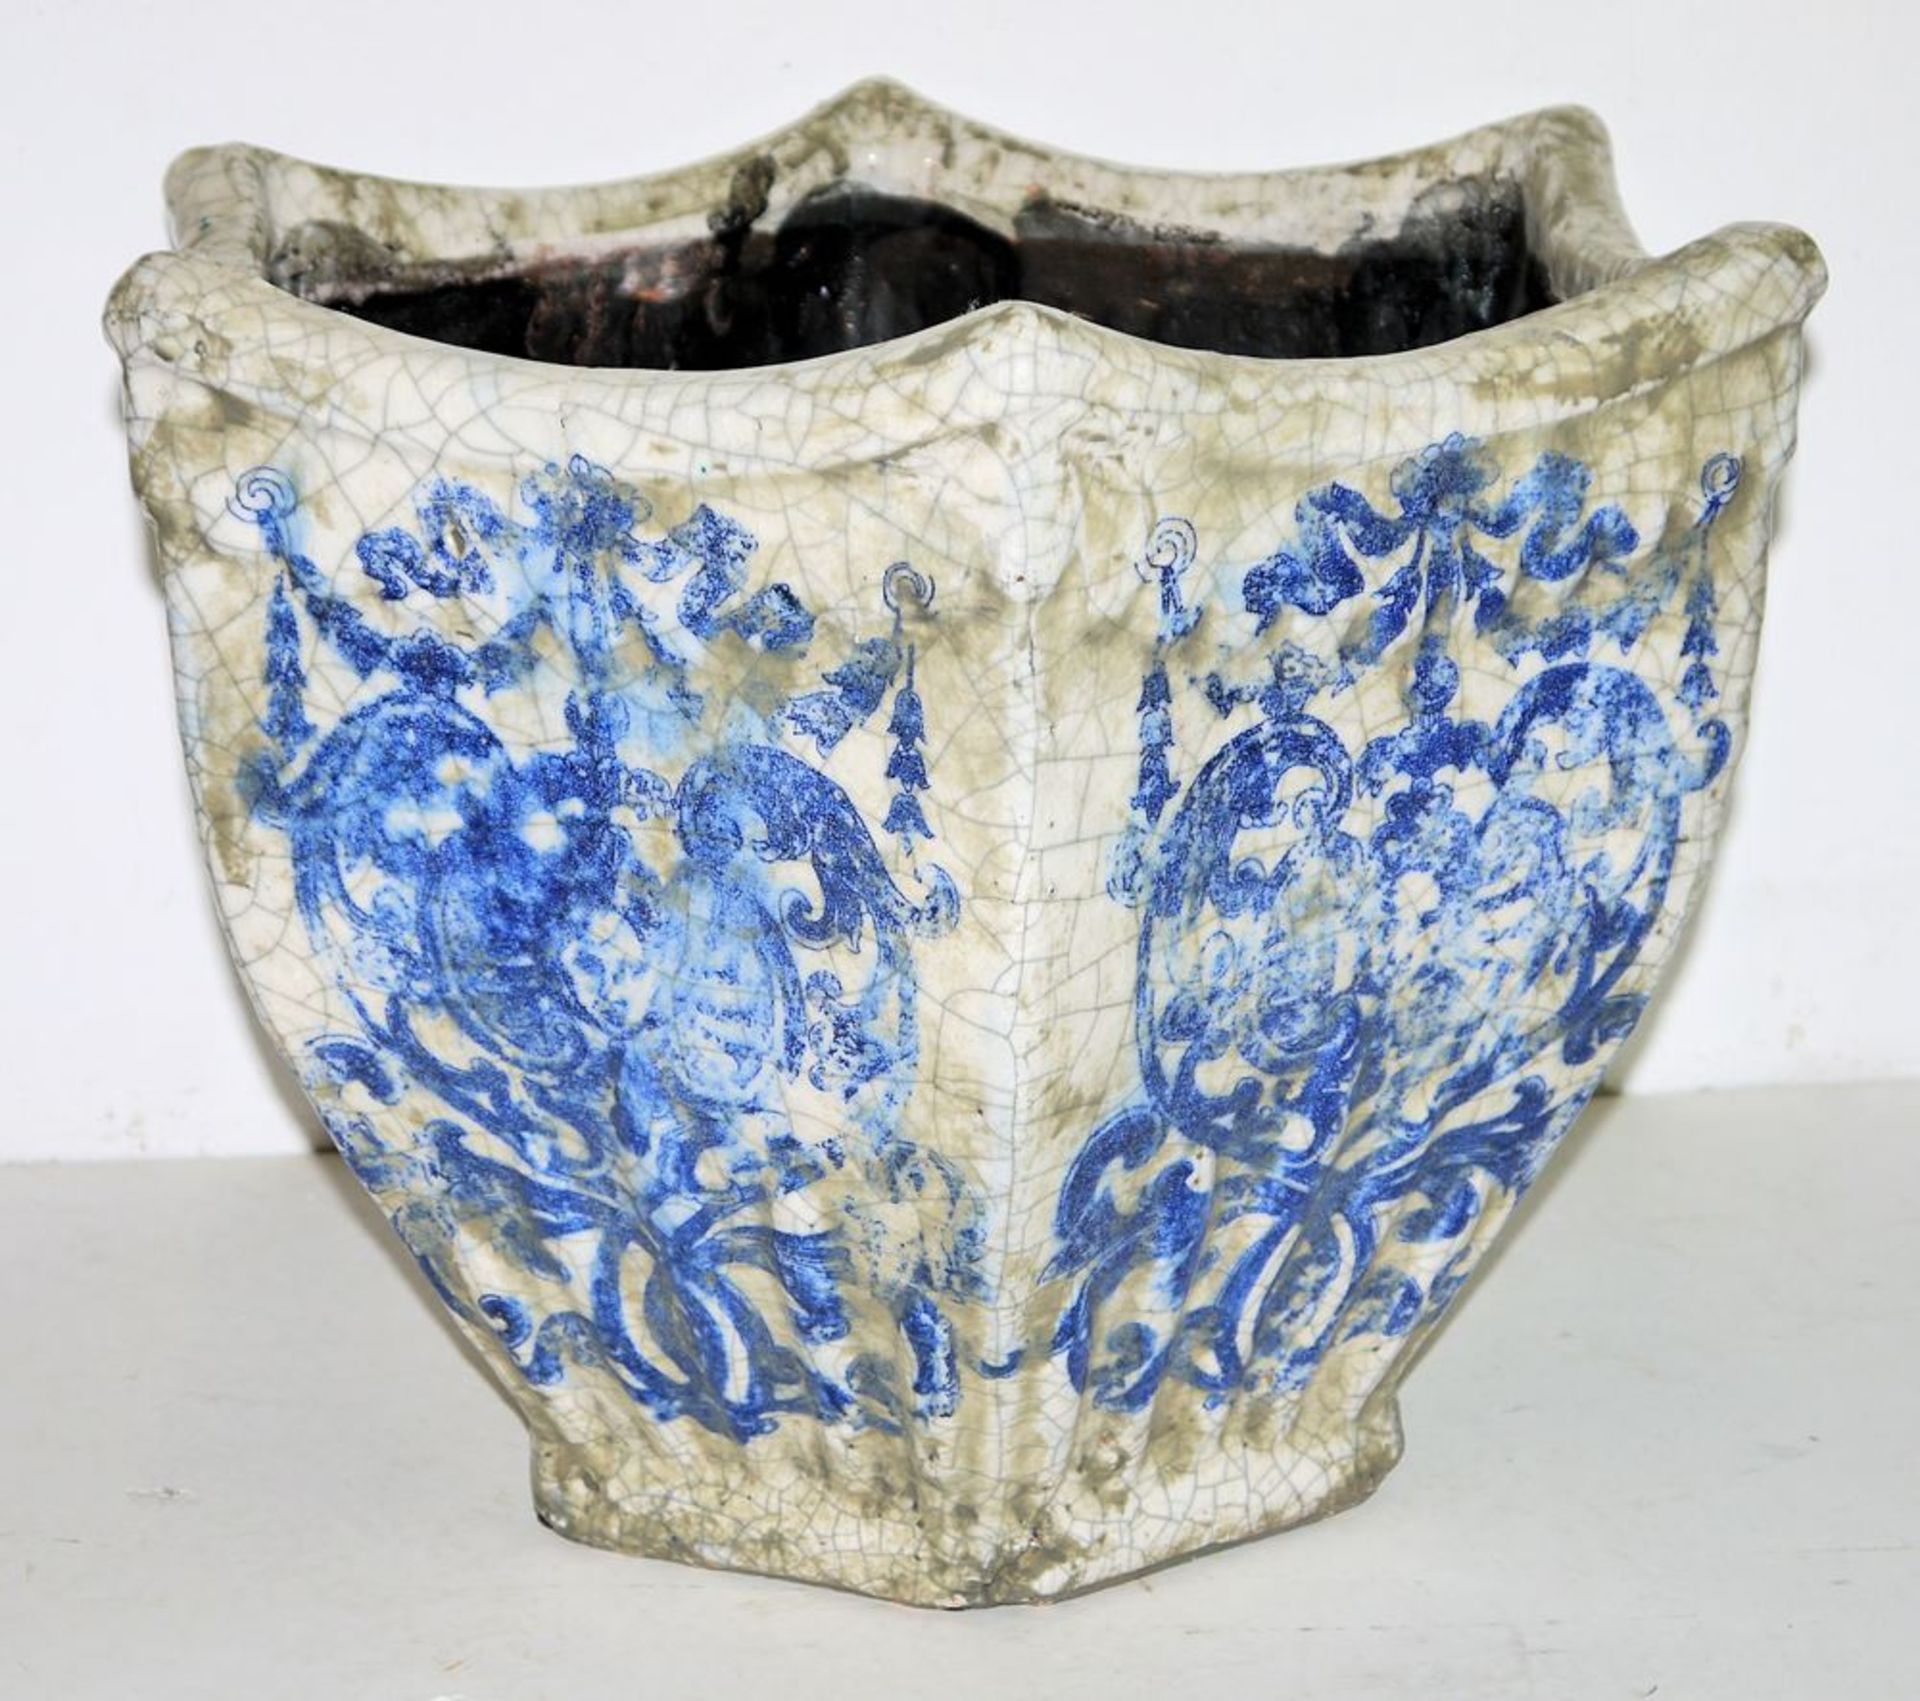 Largeßceramic plant pot with baroque blue decoration